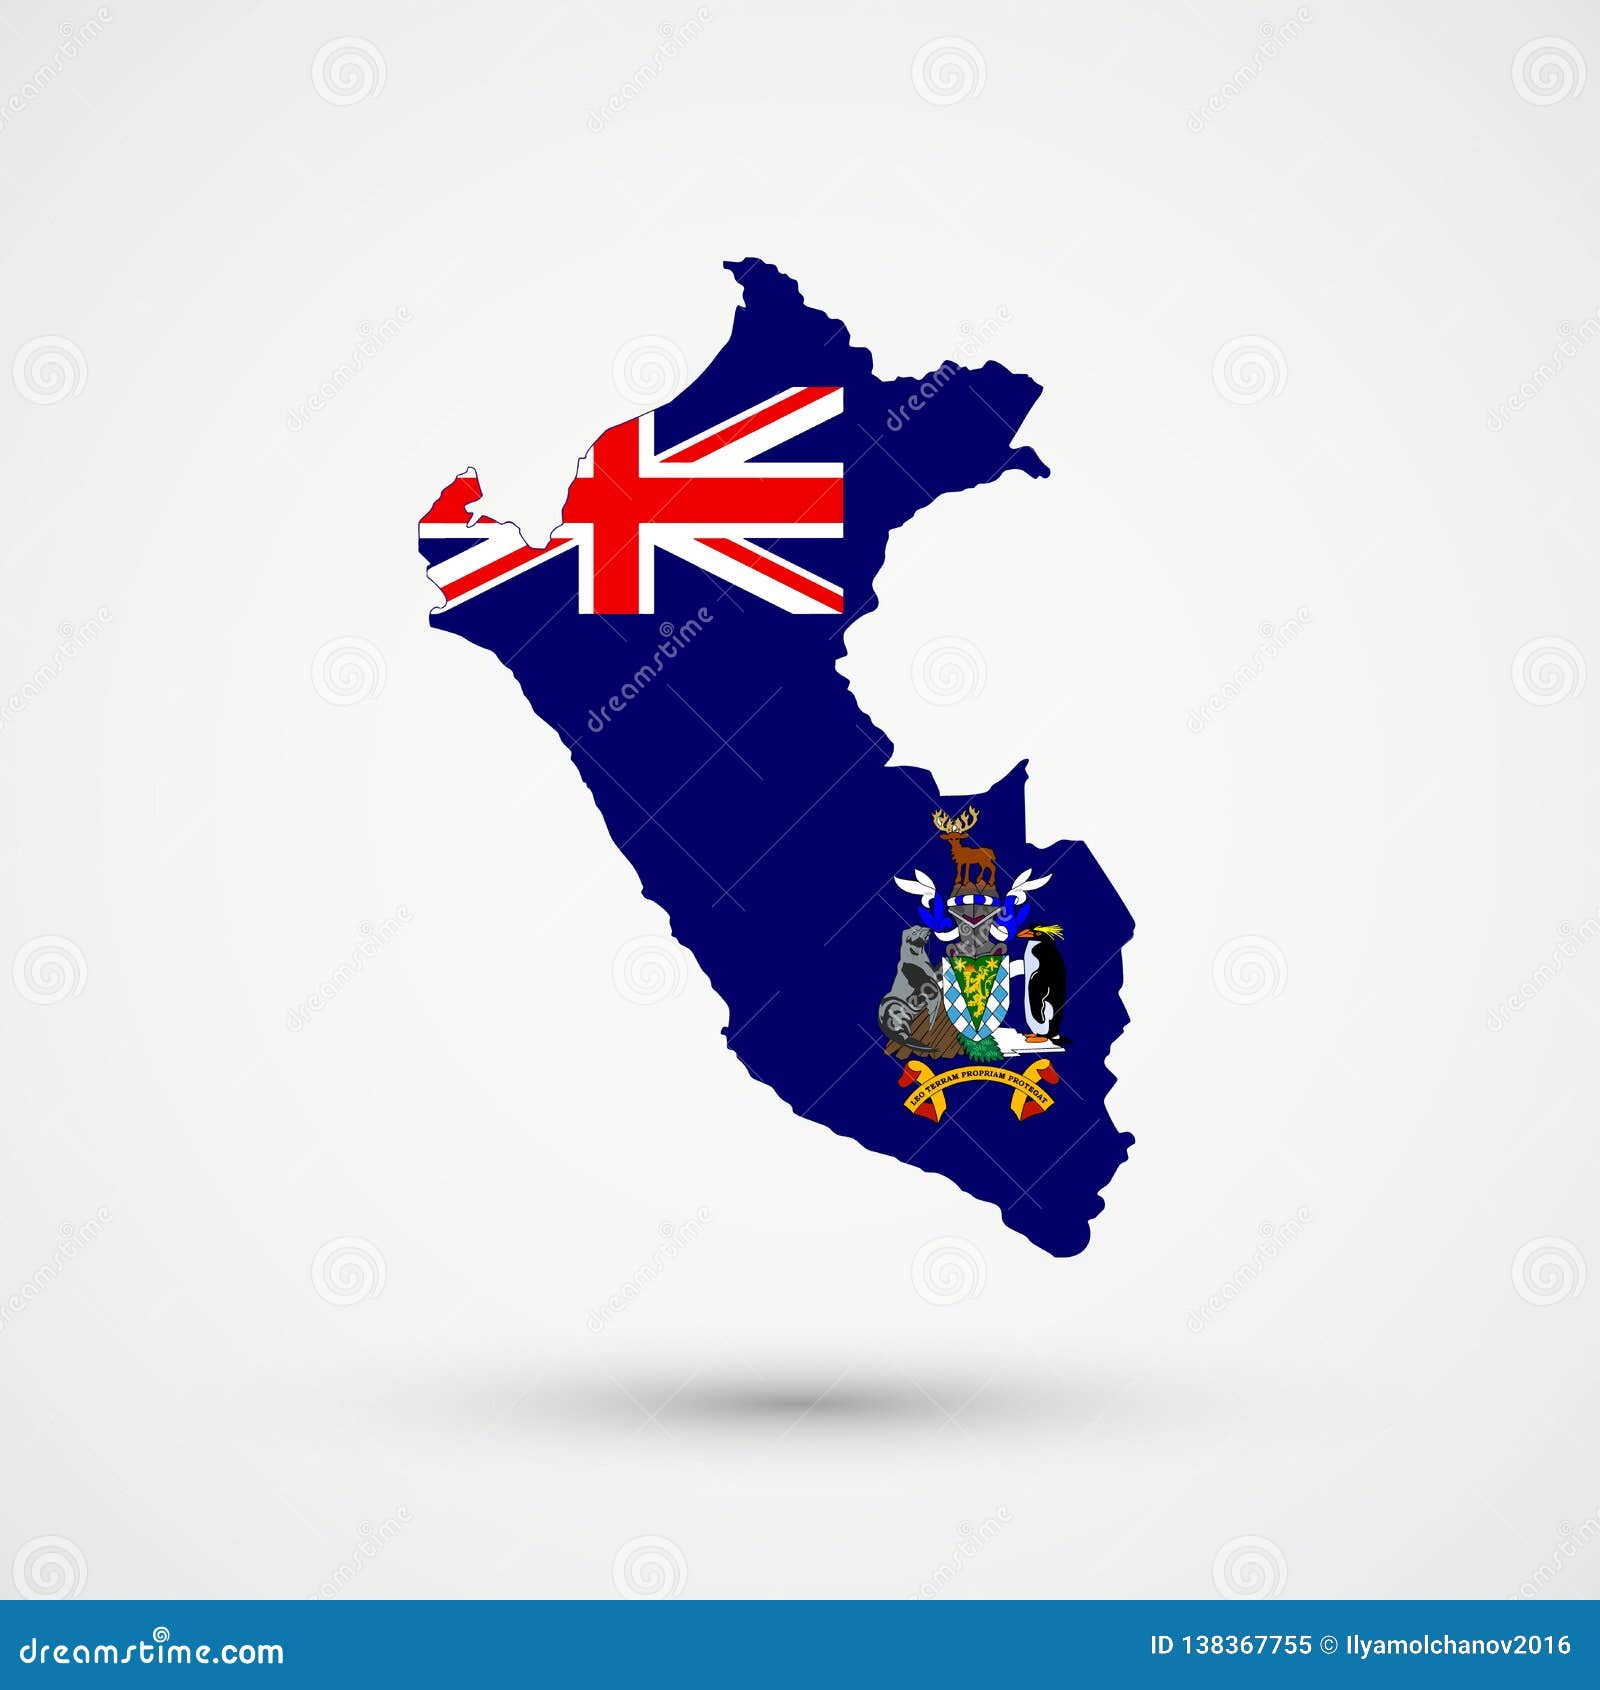 Mapa De Peru En Escudo De Armas De Georgia Del Sur Y De Los